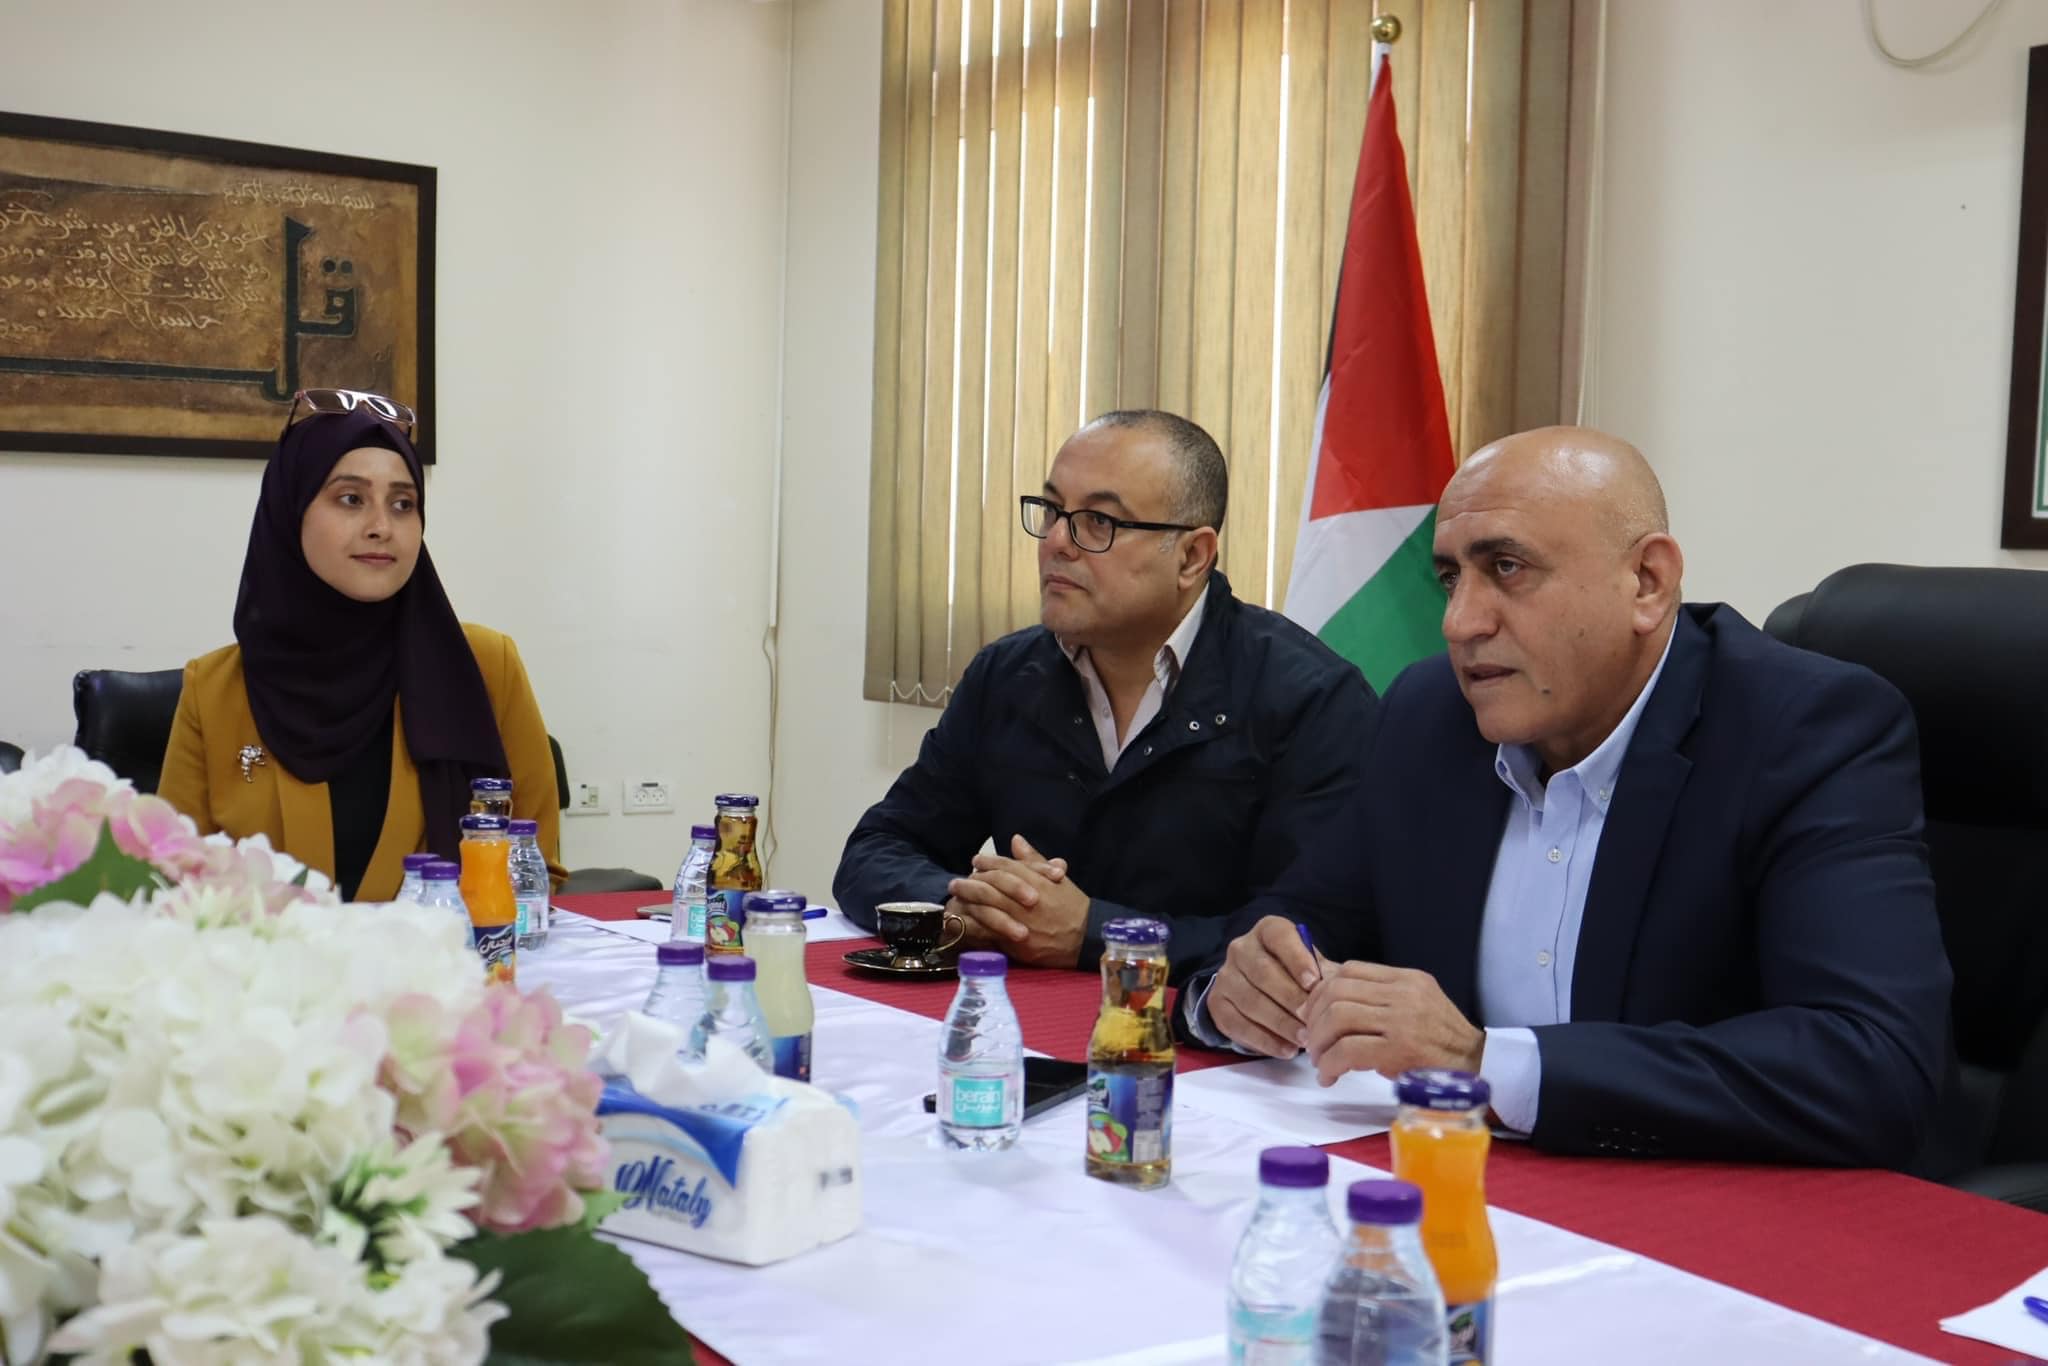 وزير الثقافة الفلسطيني يرافق الروائيين العرب لزيارة محافظتي جنين وقلقيلية 